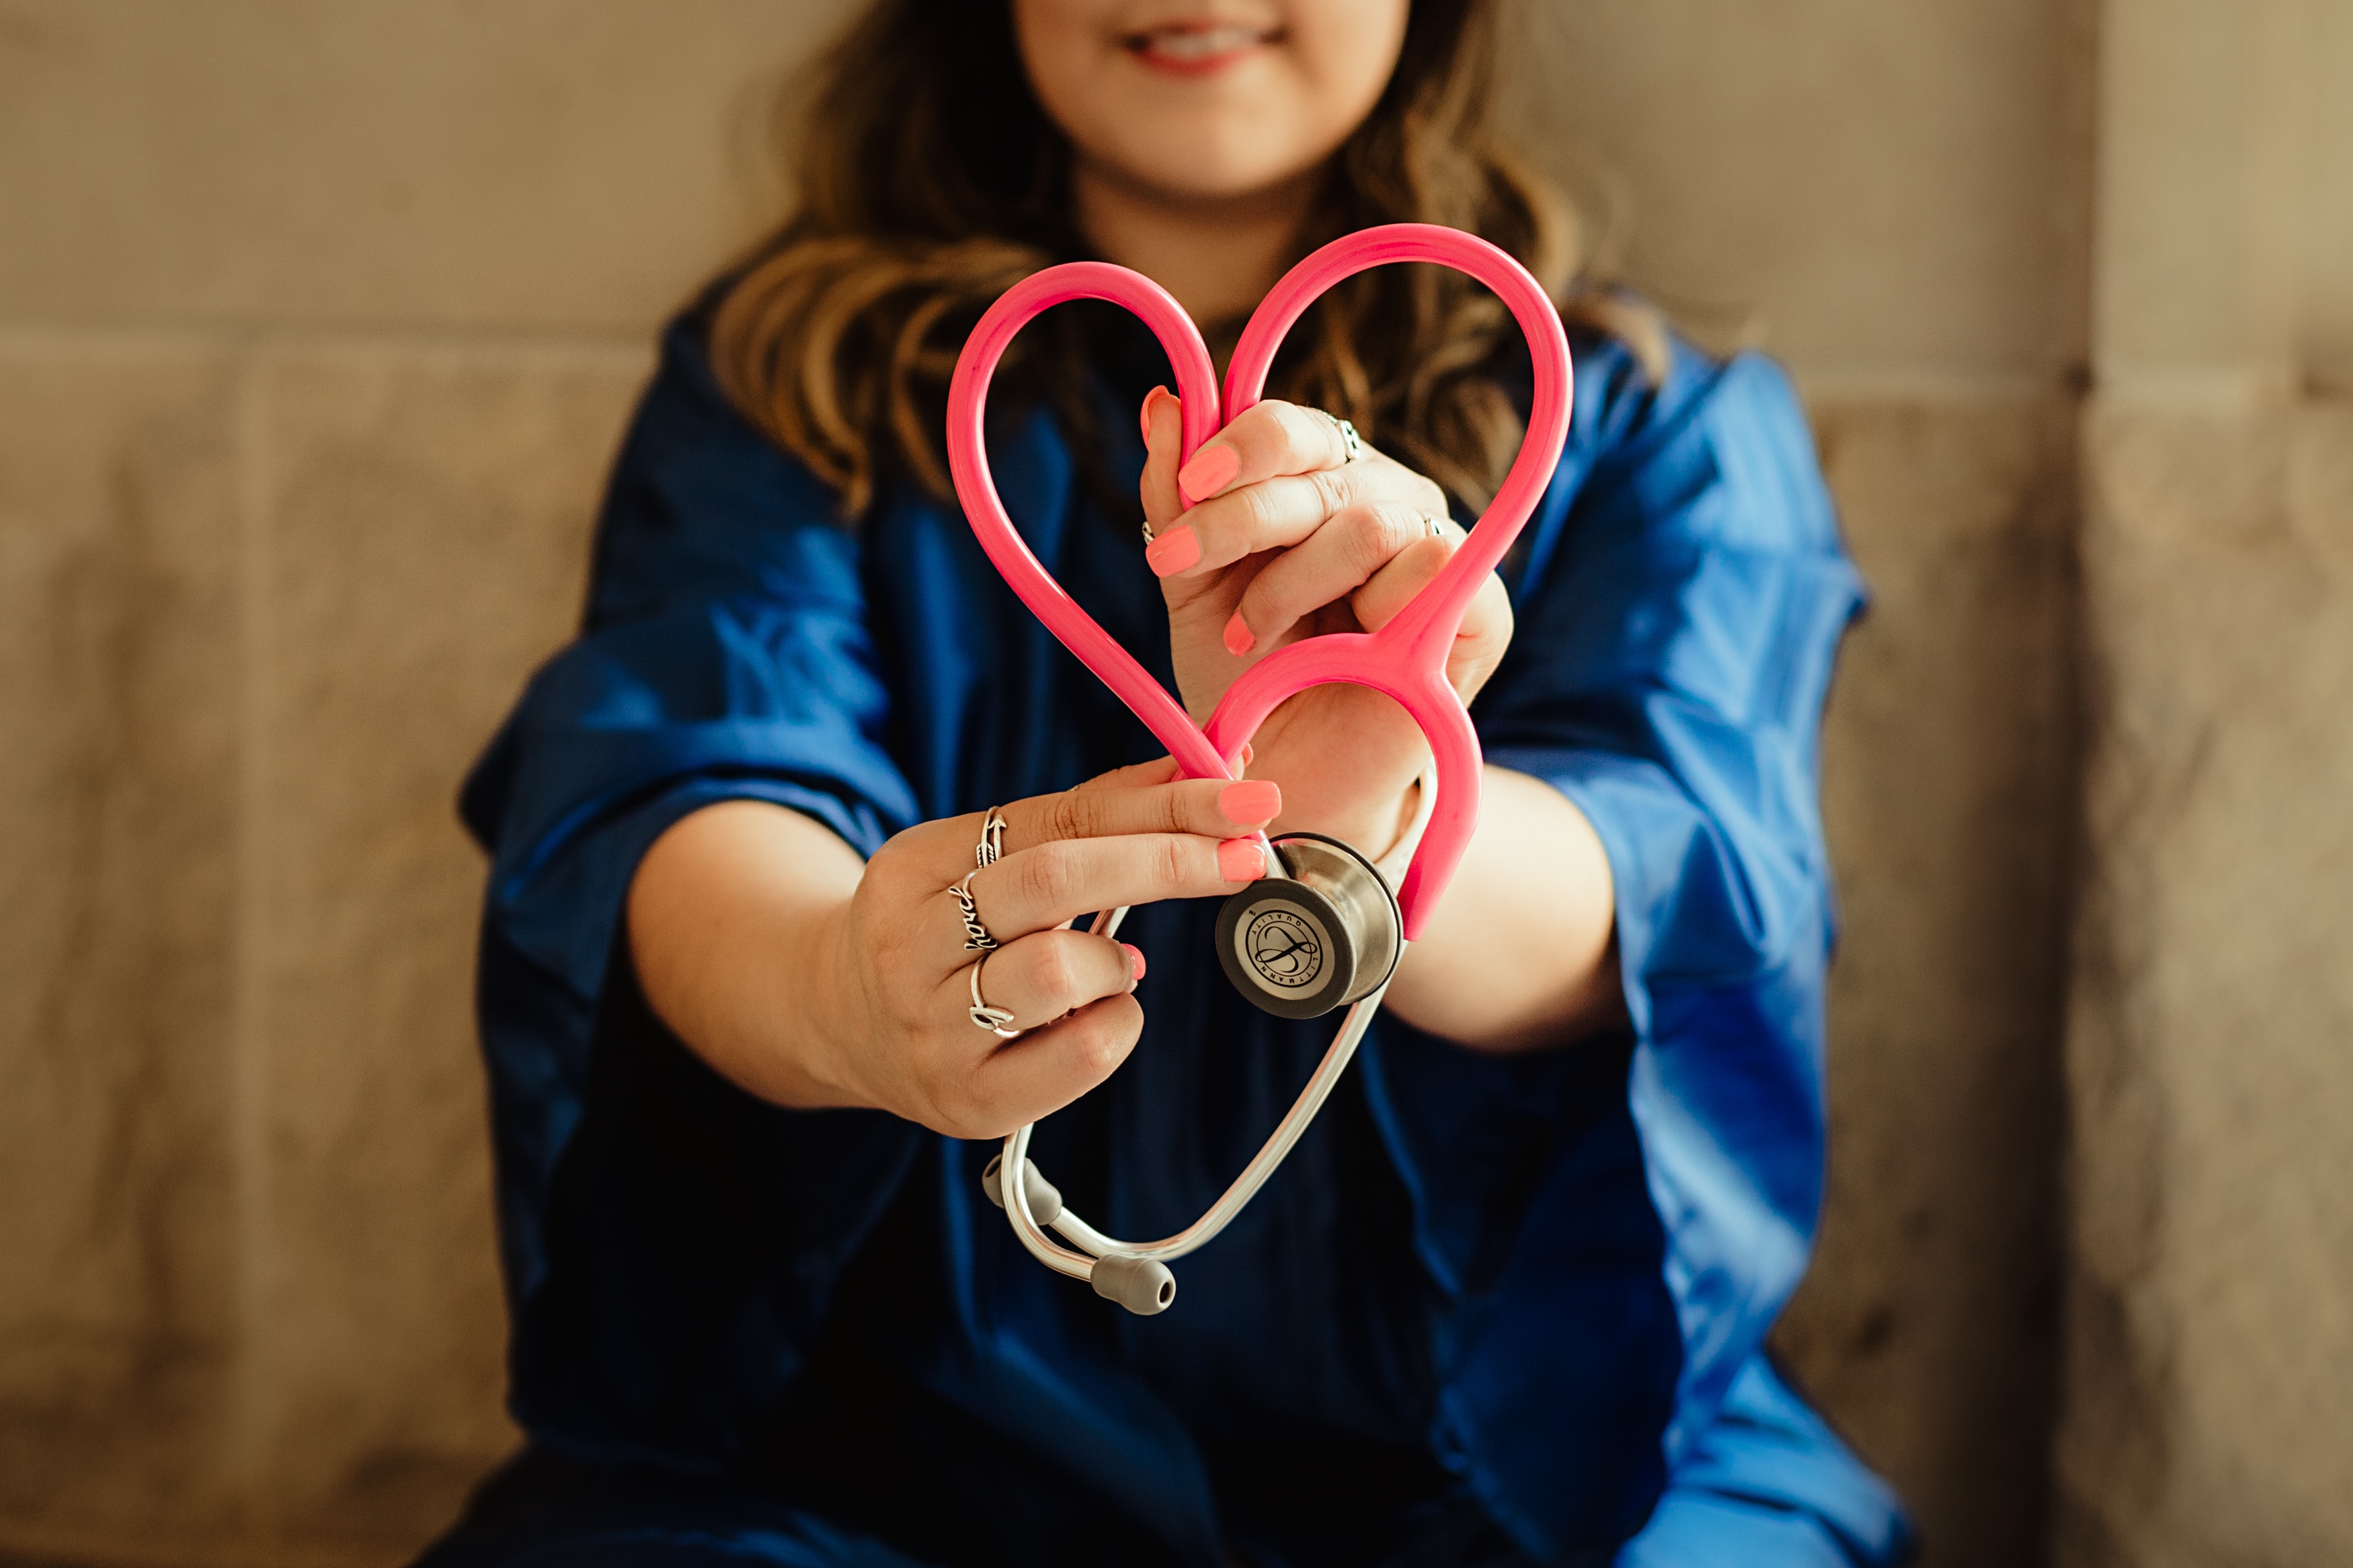 Nurse with stethoscope folded into heart shape